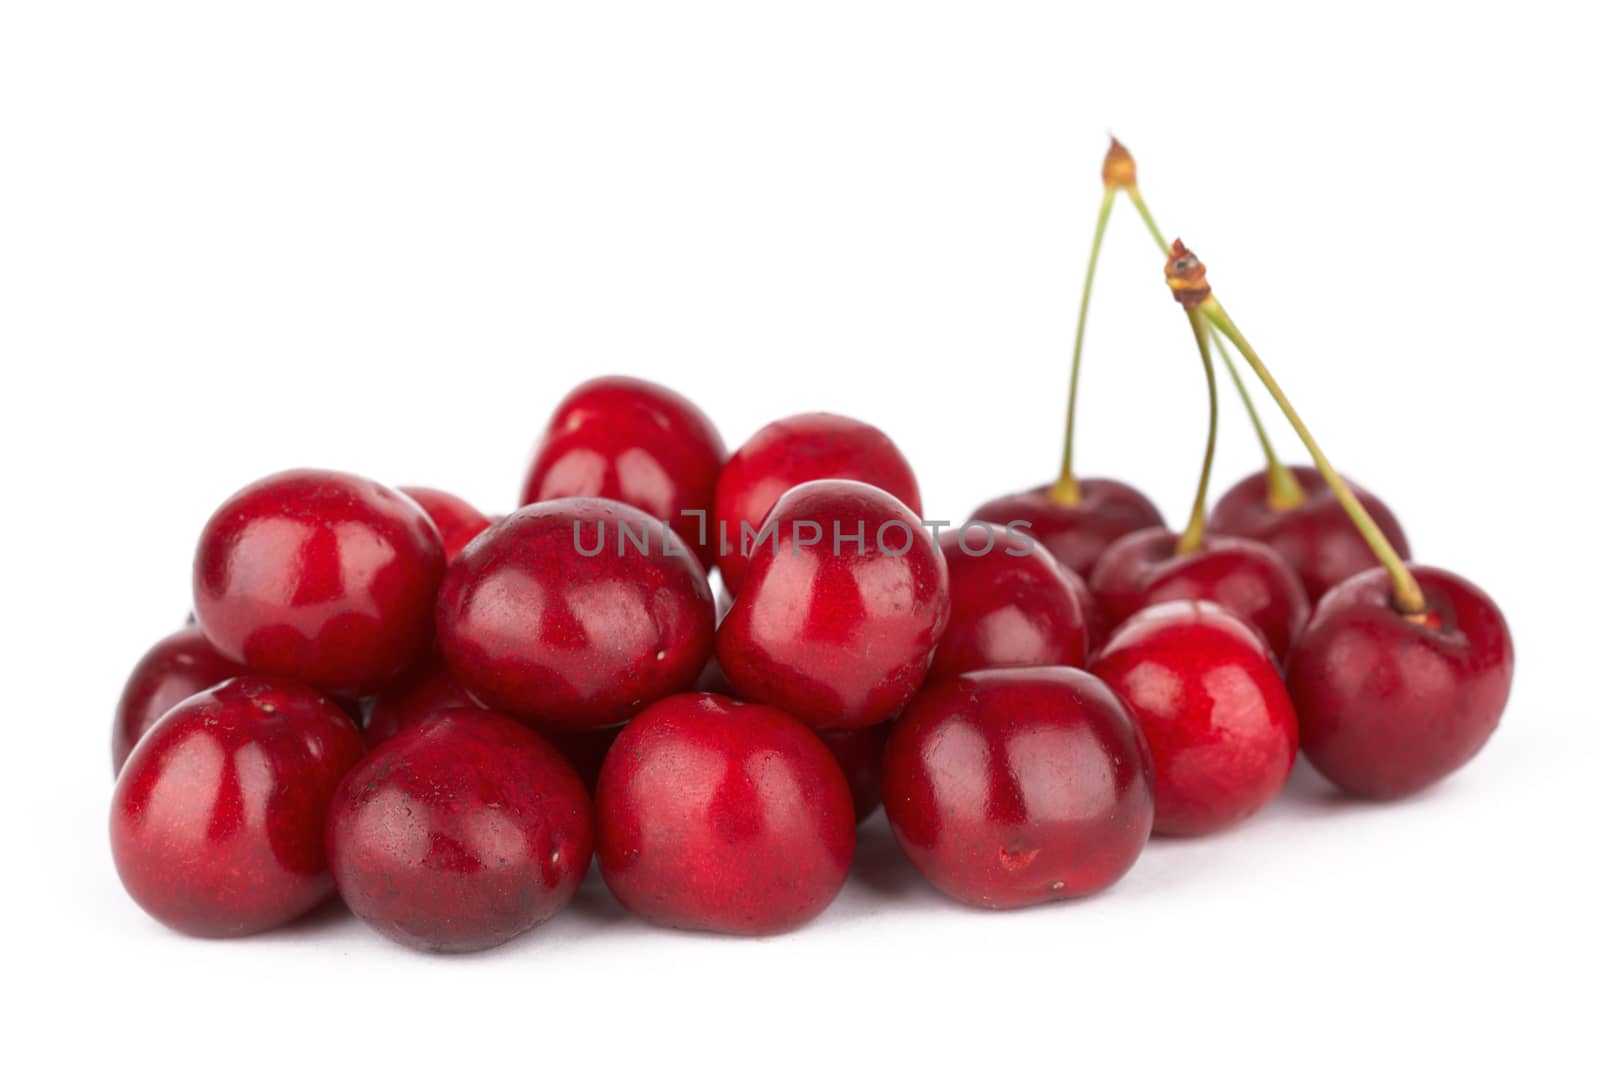 sweet cherries by pioneer111